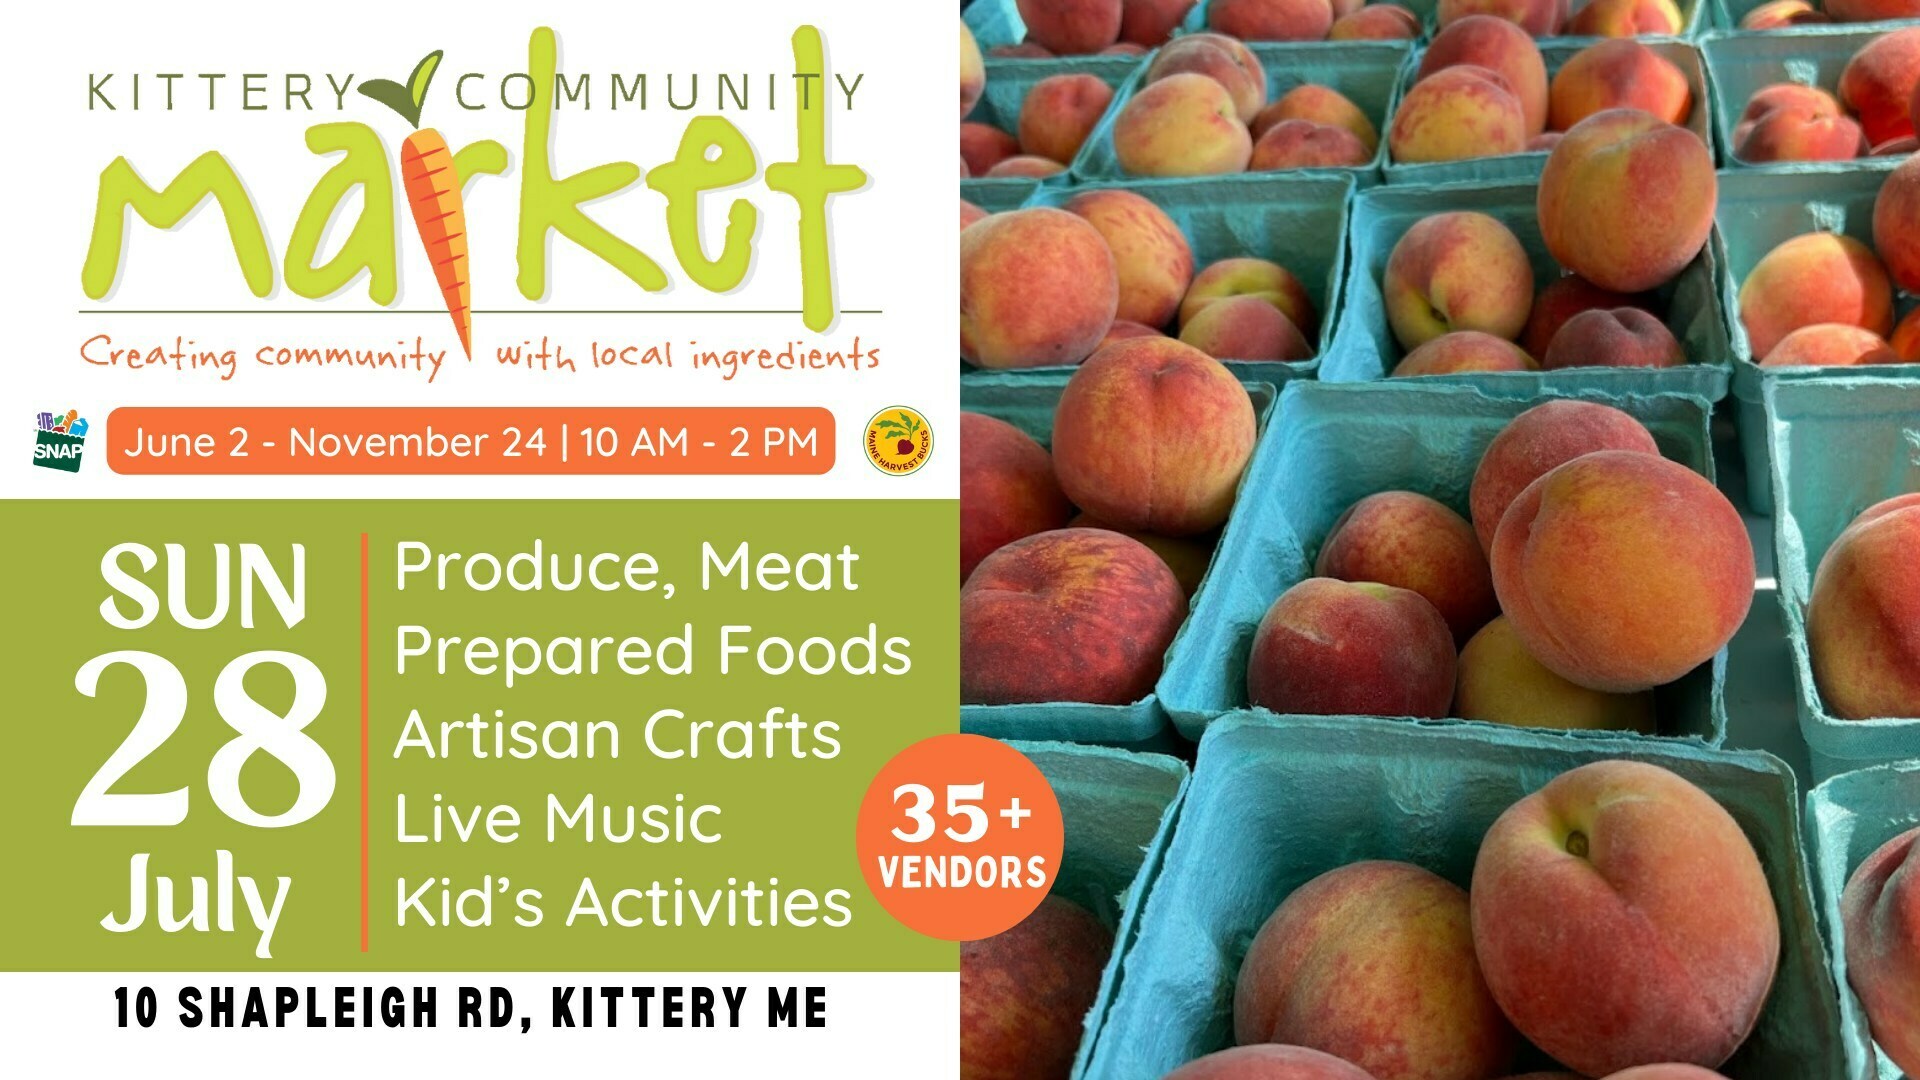 Kittery Community Market | Sunday, July 28 | 10-2 PM, Kittery, Maine, United States